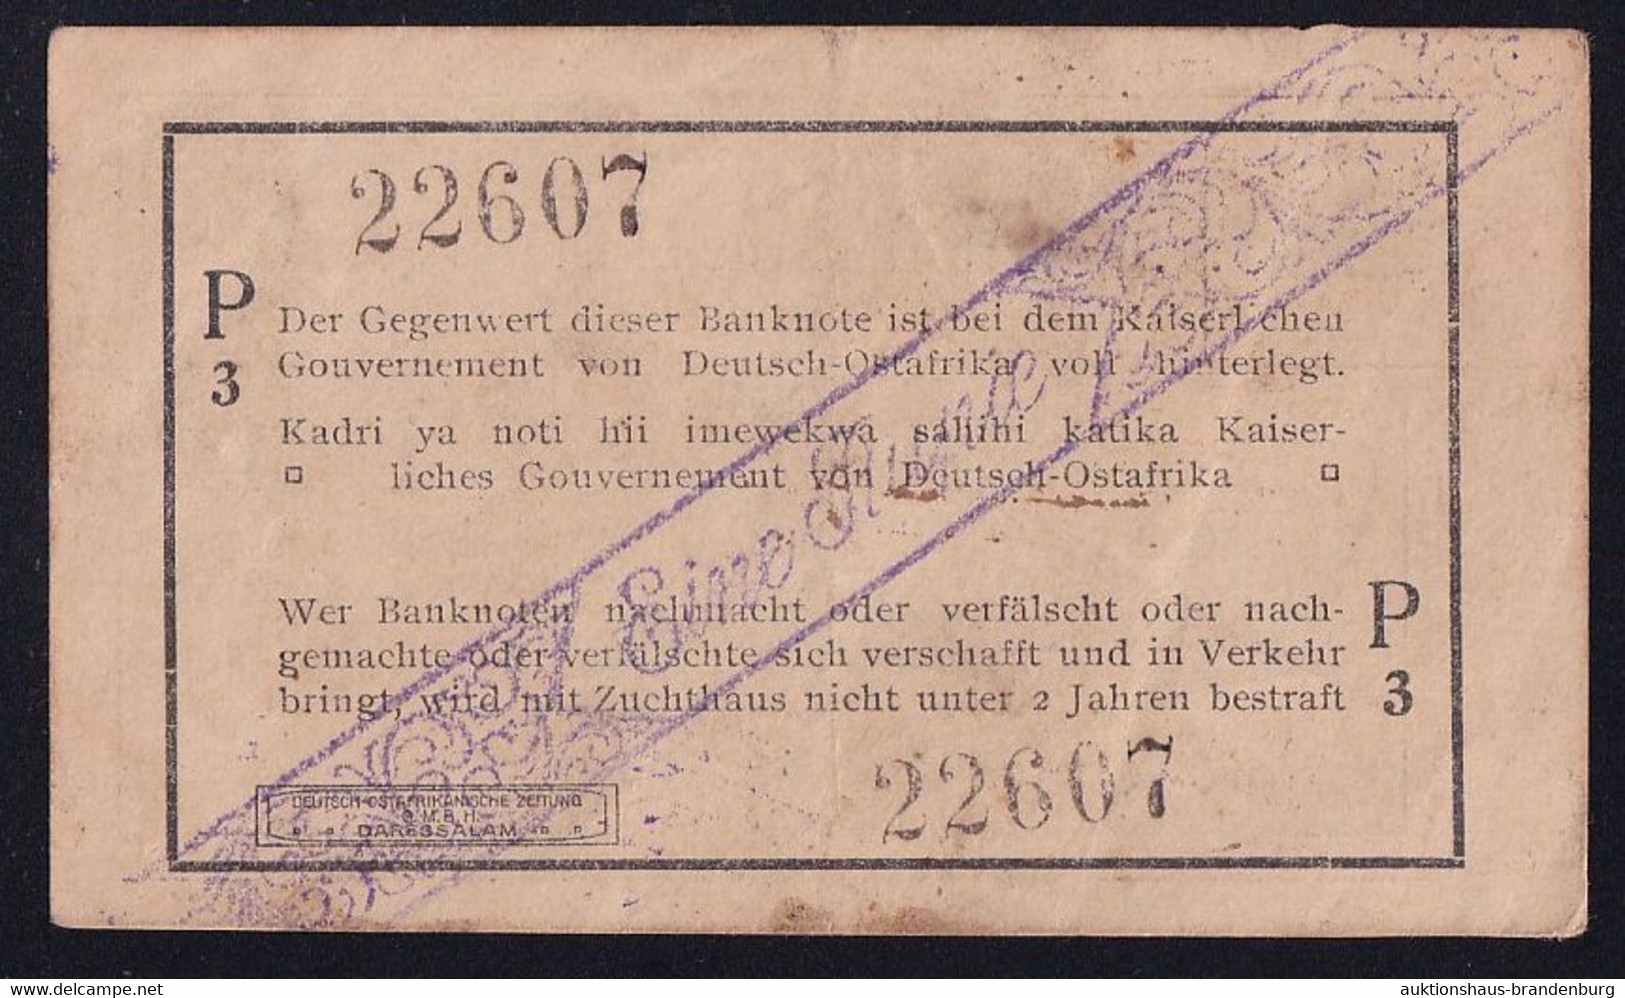 DOA Deutsch Ostafrika: 1 Rupie 1.2.1916 - Serie P3 (DOA-31a) - Deutsch-Ostafrikanische Bank